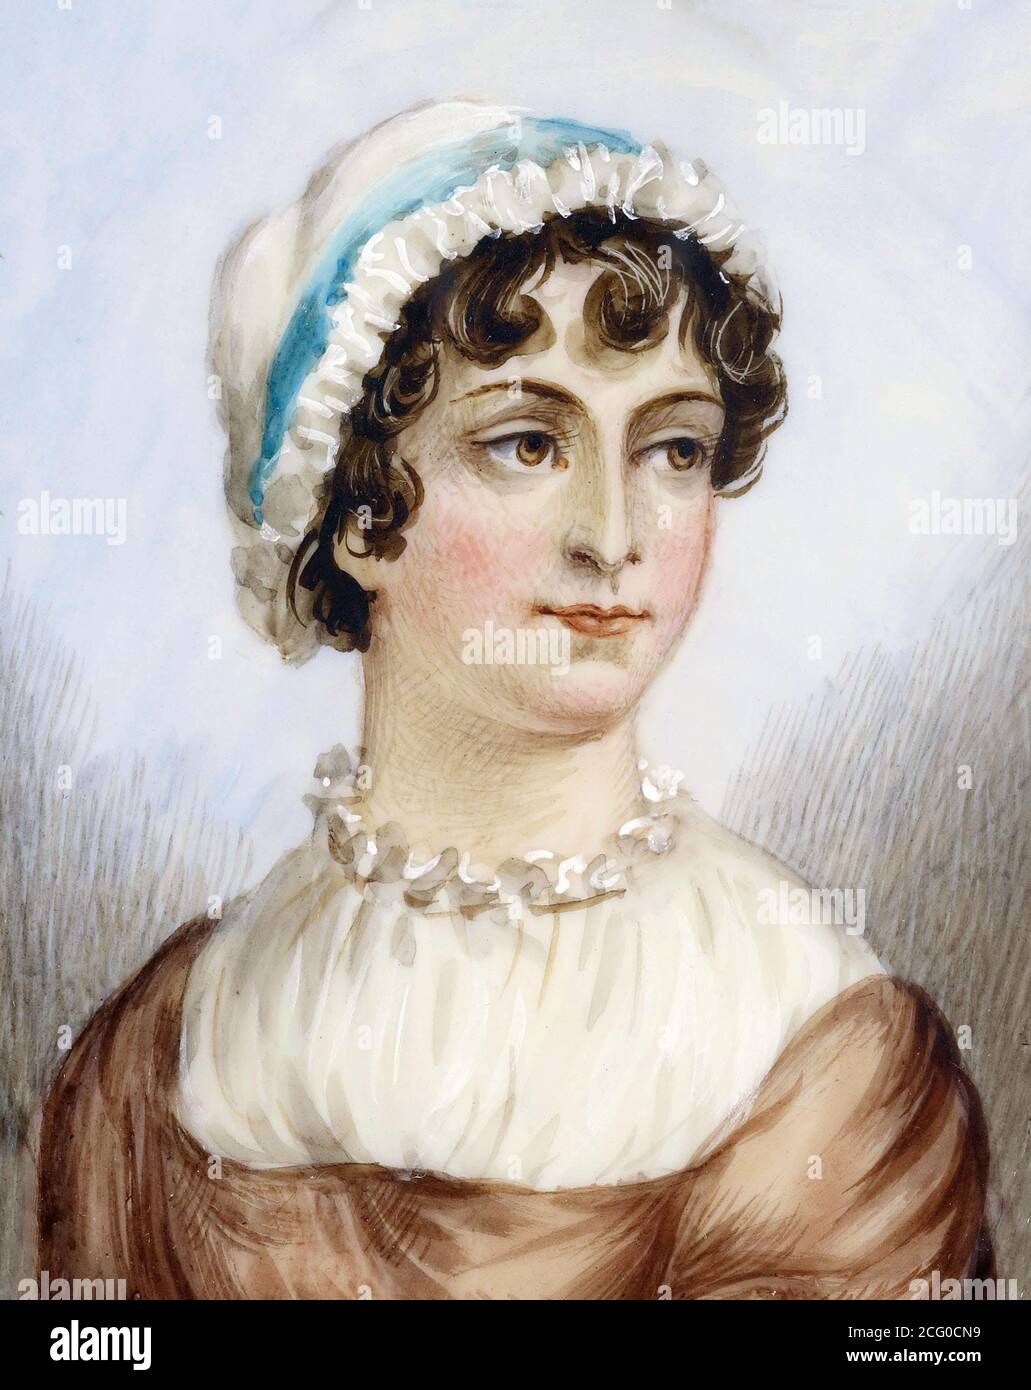 Jane Austen. Portrait en miniature de la romancière anglaise Jane Austen (1775-1817) aquarelle sur ivoire, c. 1870-1890, anonyme Banque D'Images